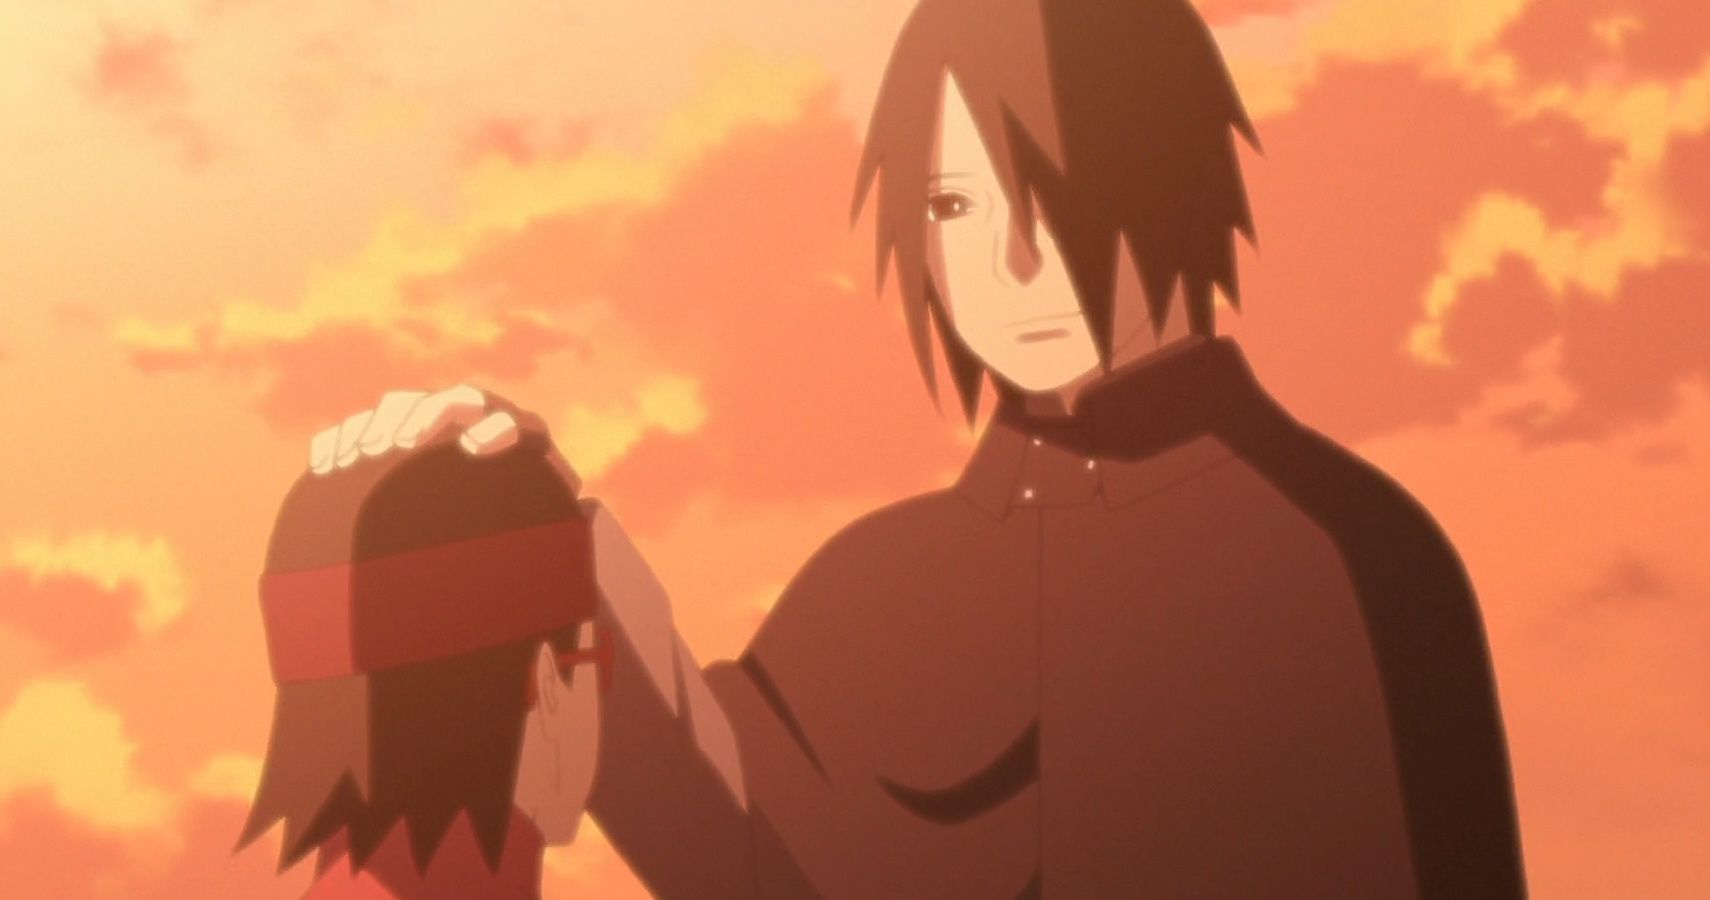 Sasuke with his hand on Sarada's head